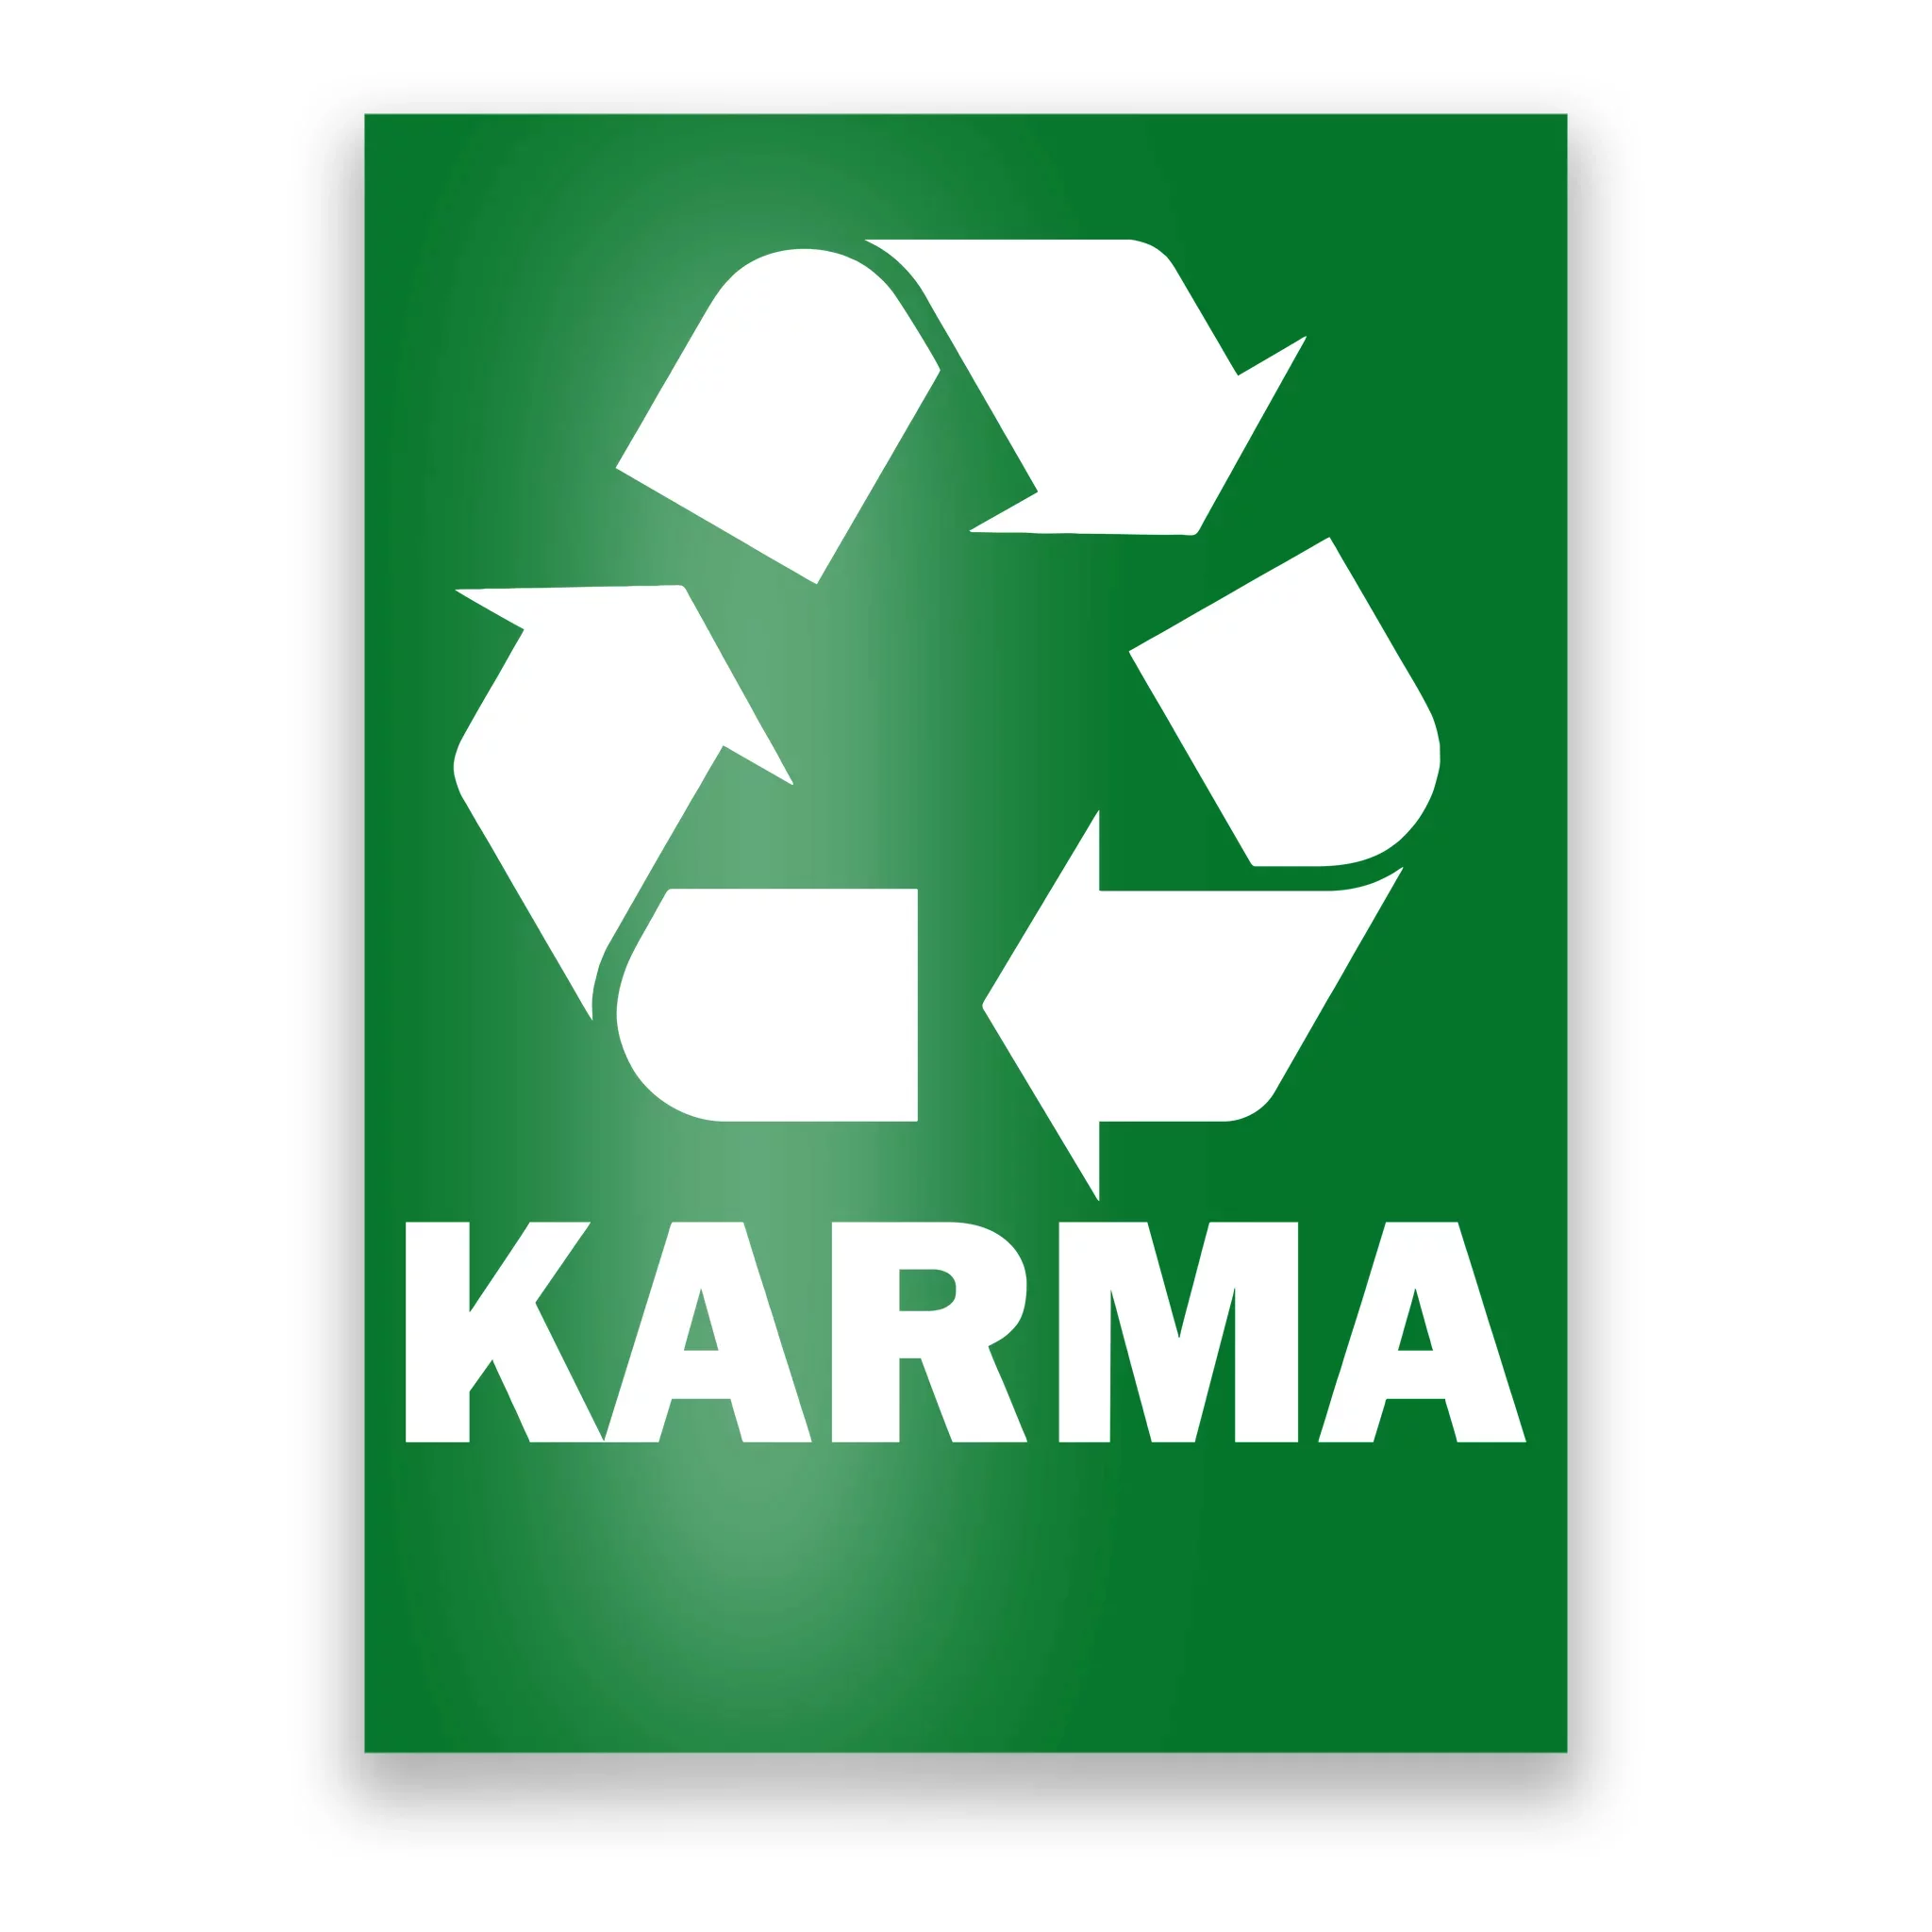 Karma's logo | ? logo, Karma, Gaming logos